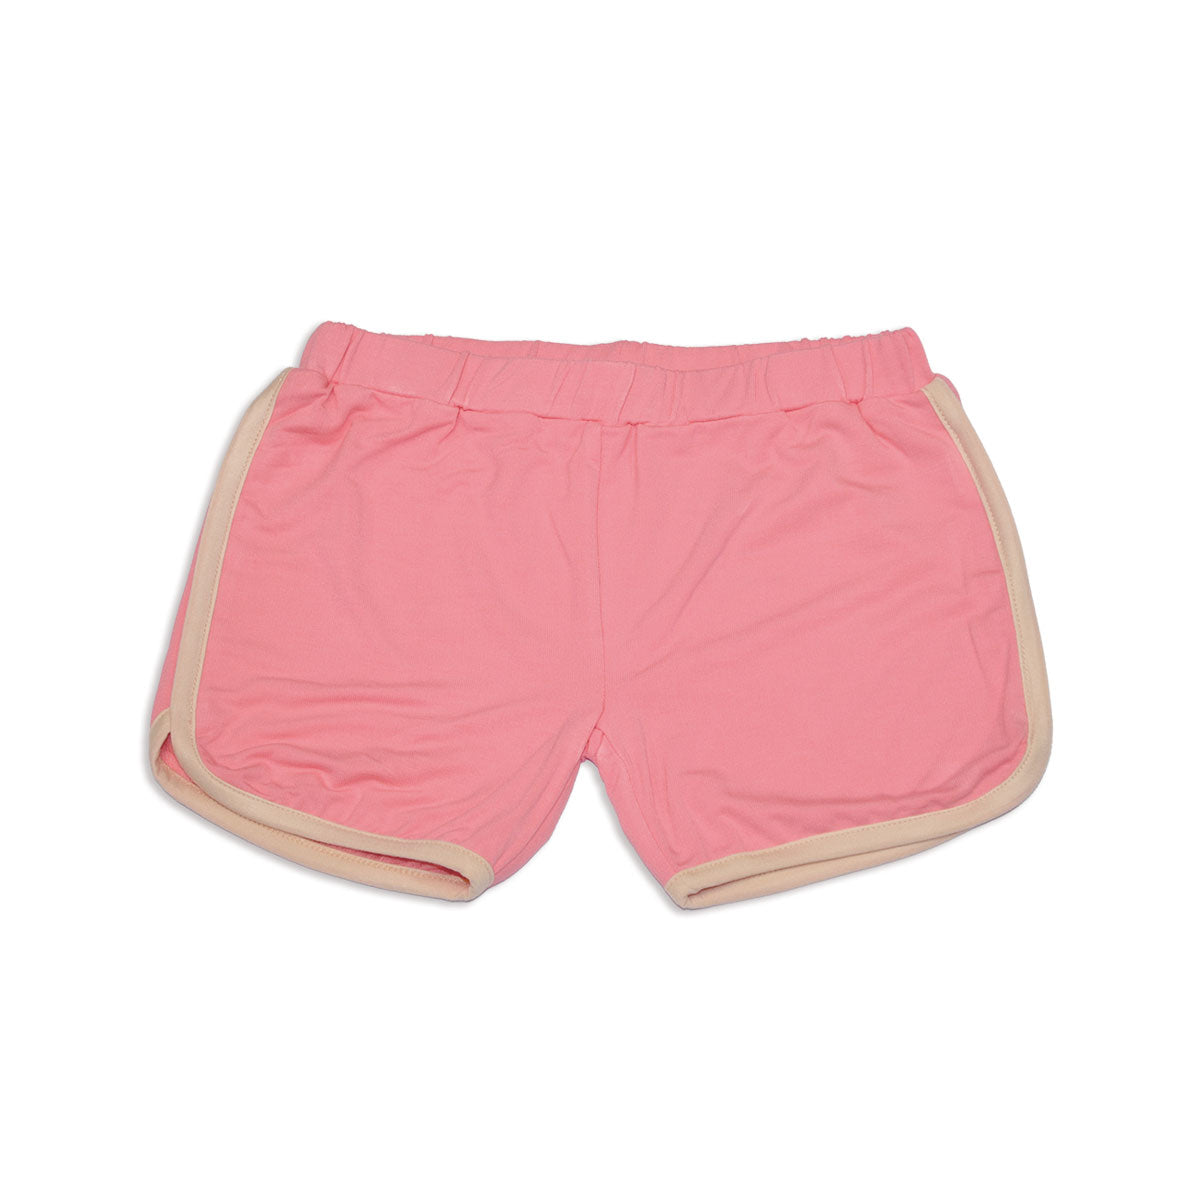 bamboo terry shorts pink lemonade